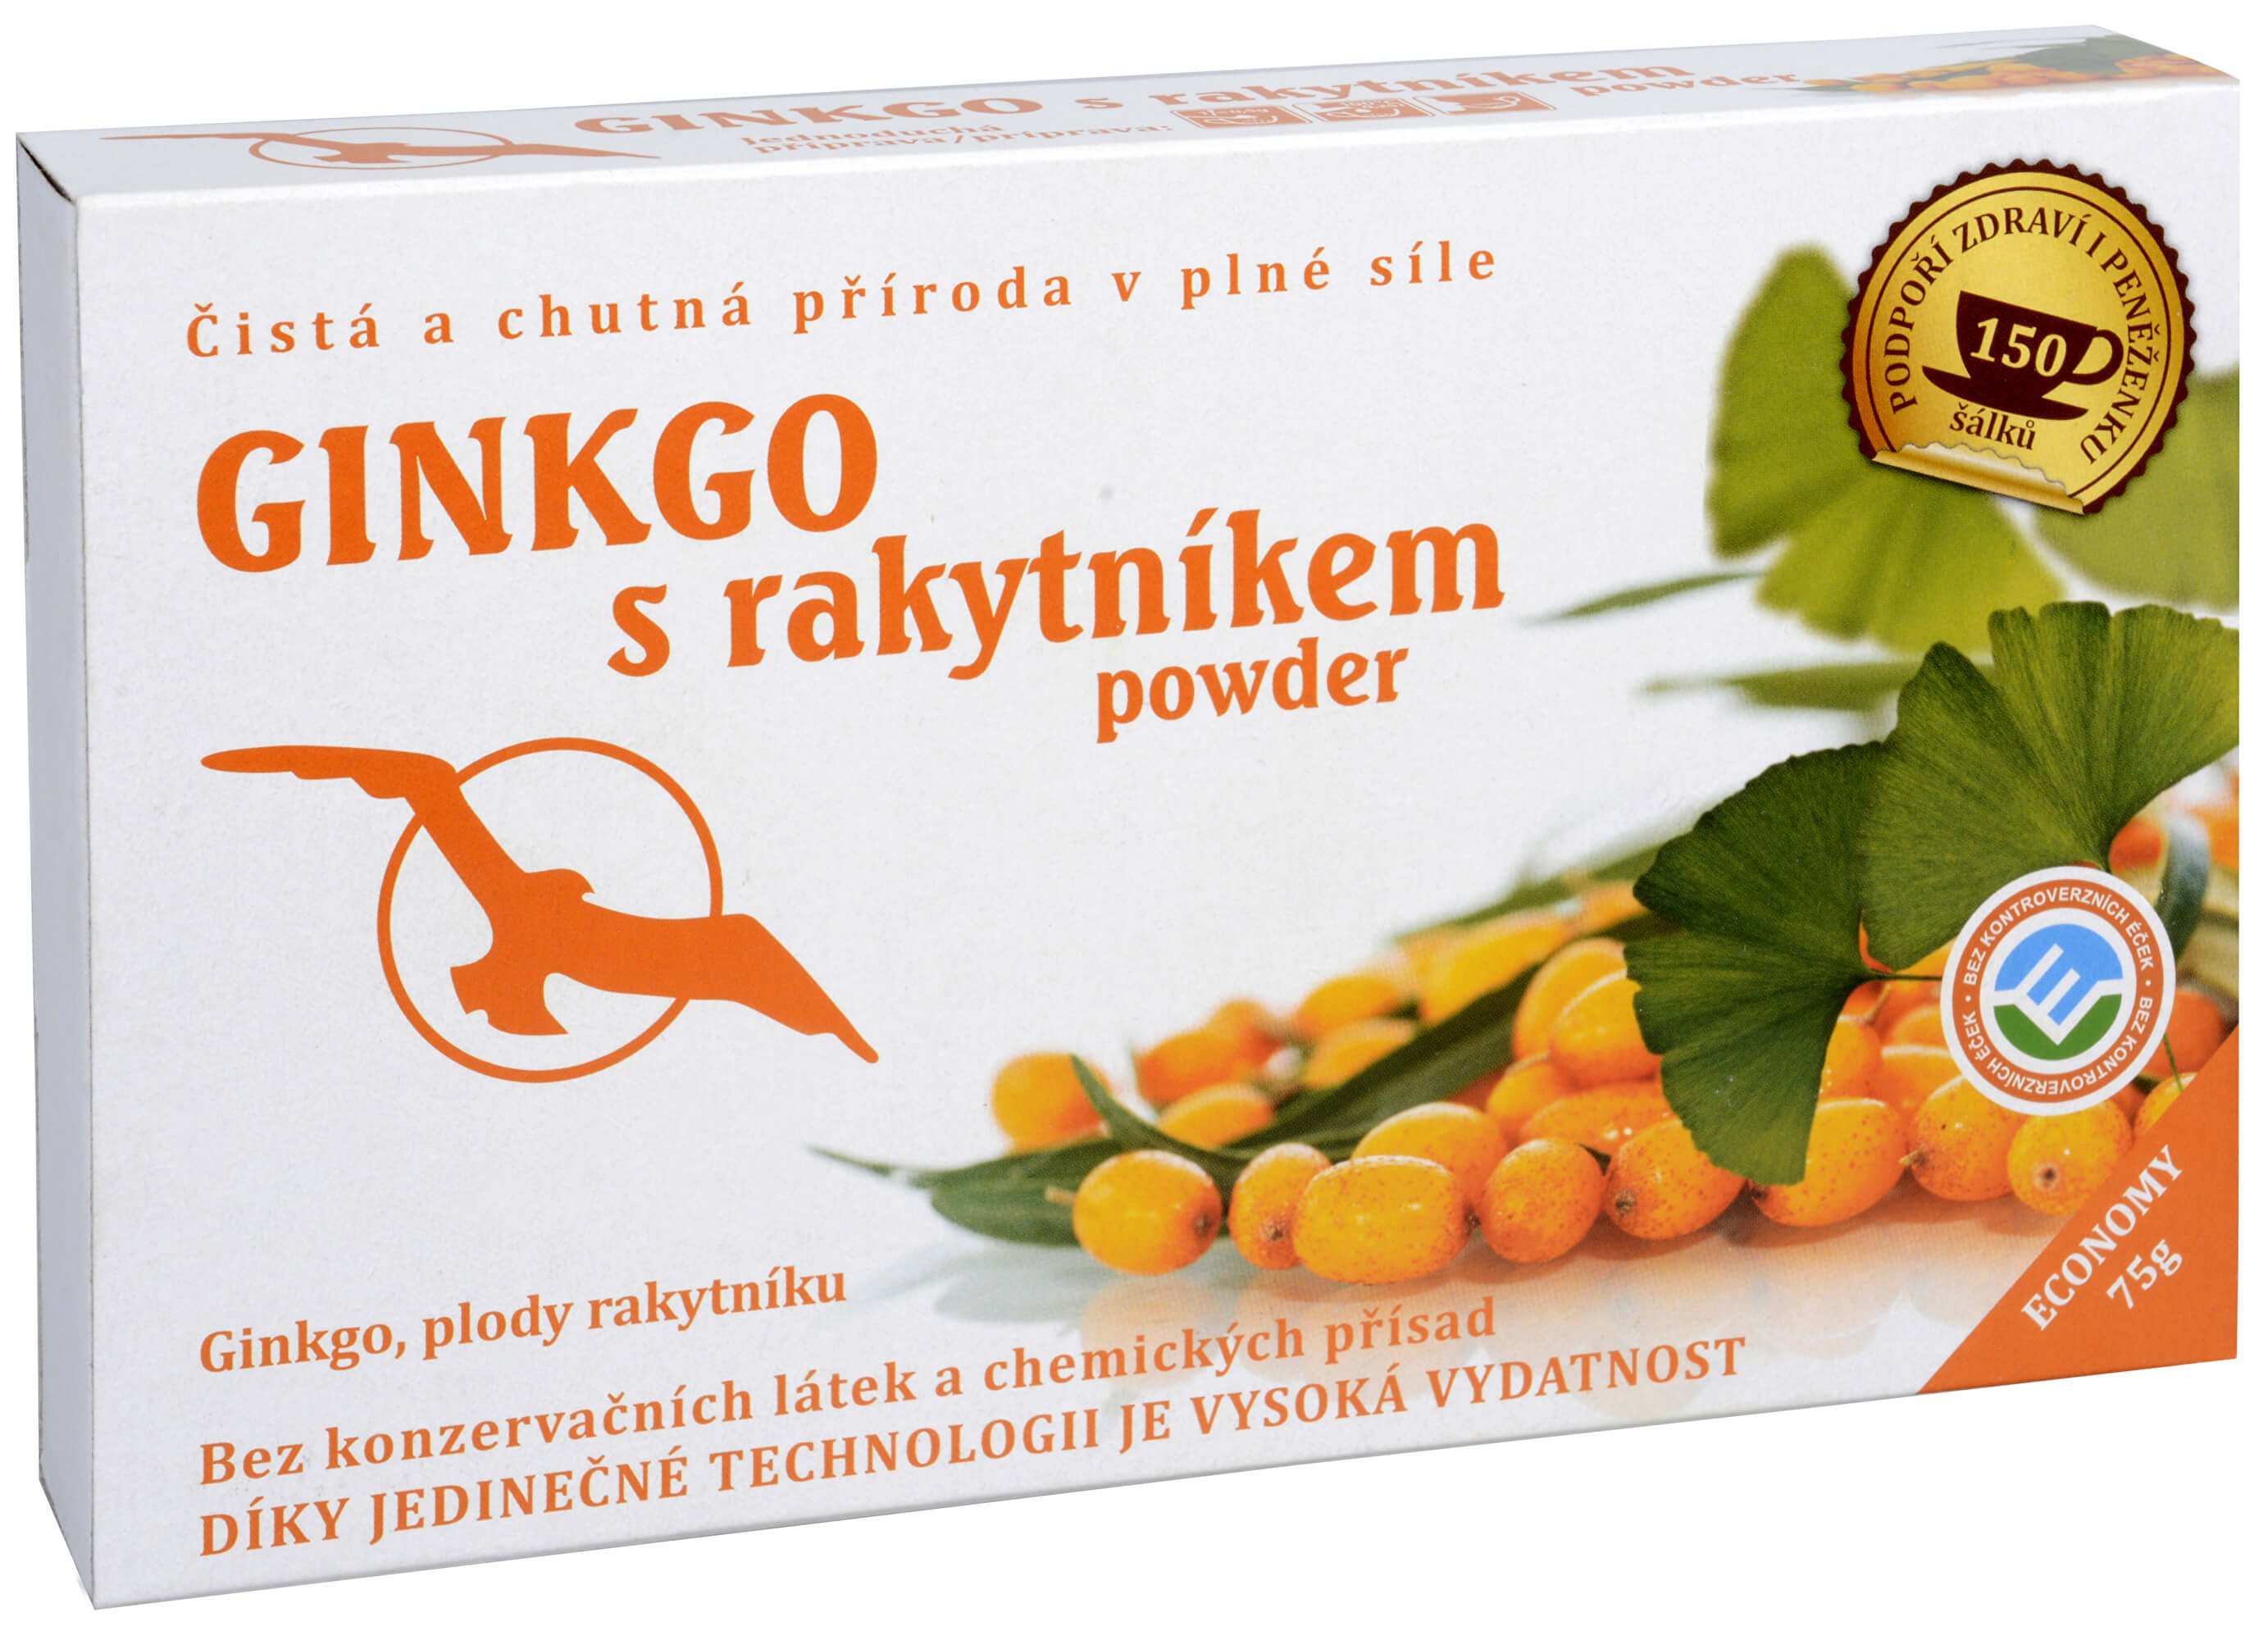 Zobrazit detail výrobku Hannasaki Ginkgo s rakytníkem powder - ginkgo, plody rakytníku 75 g